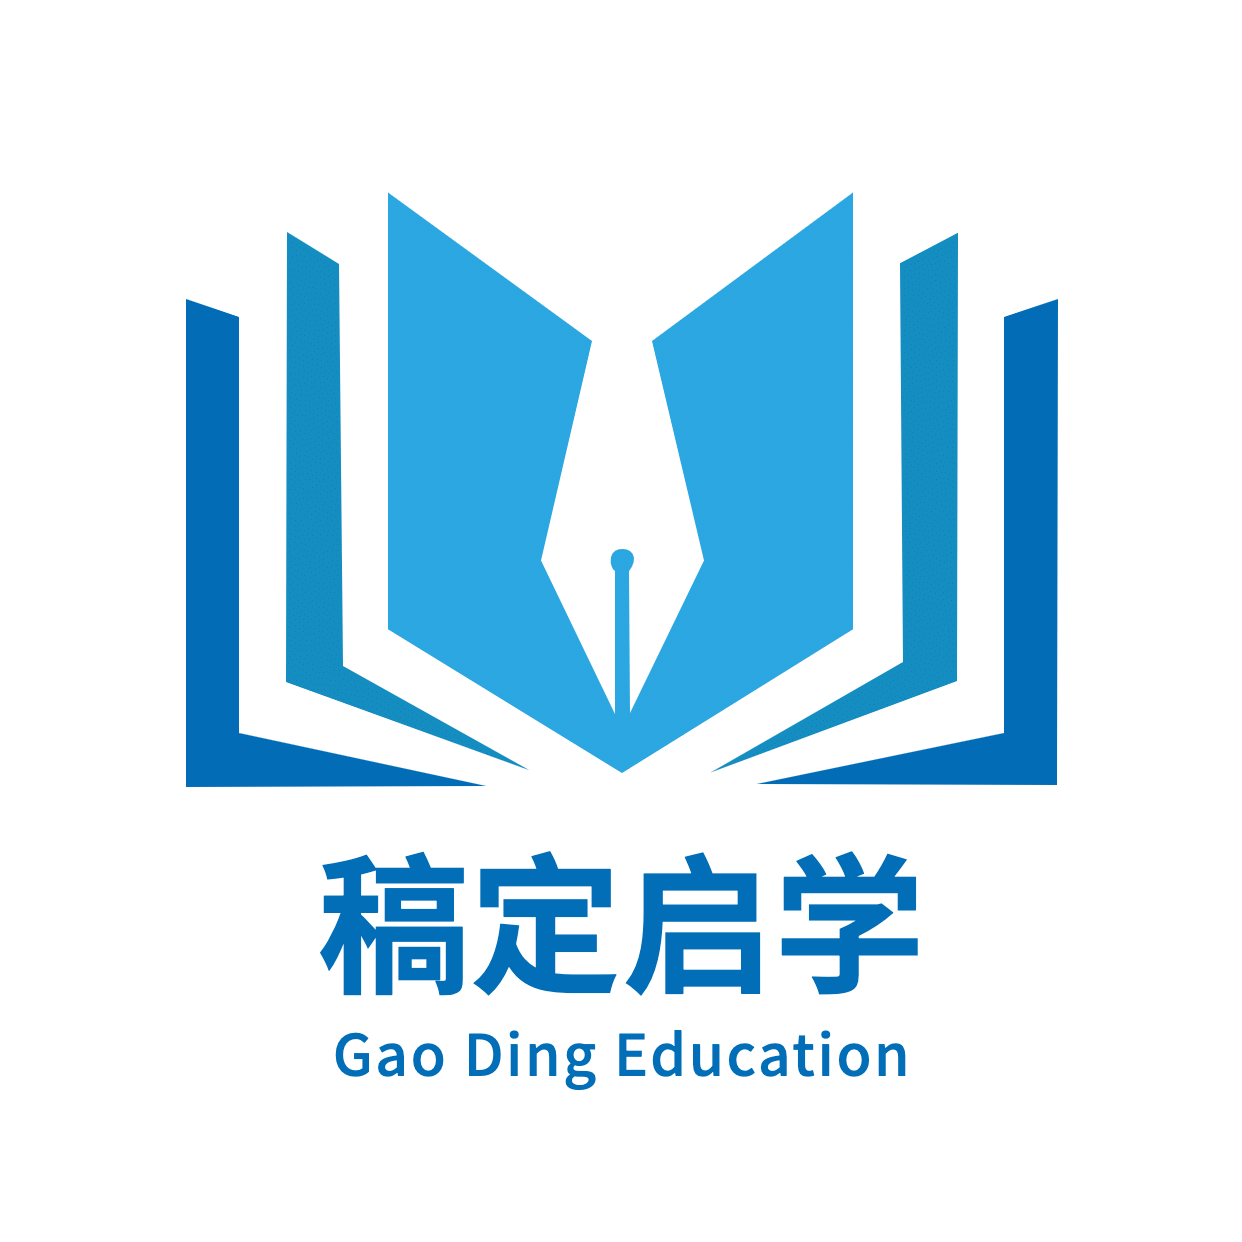 教育行业简约图形logo